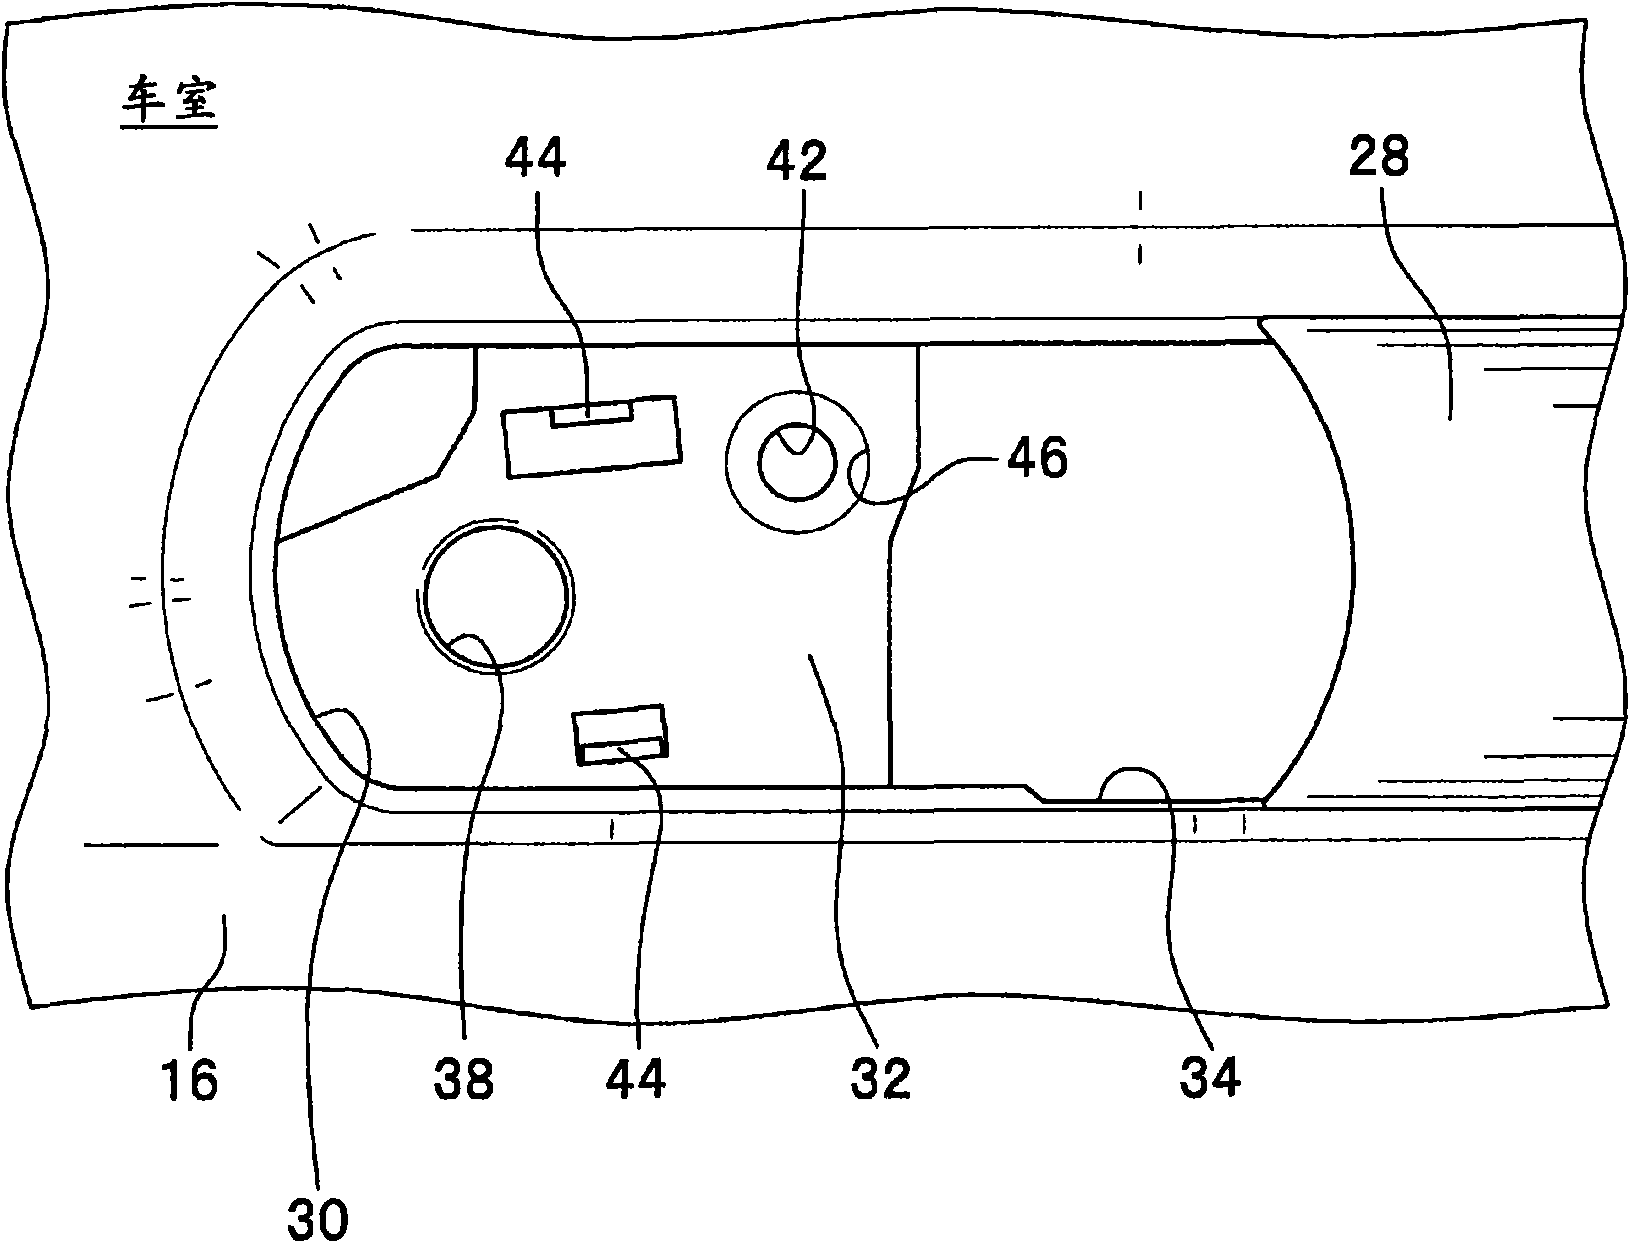 Installation structure of inner handle device of vehicular door